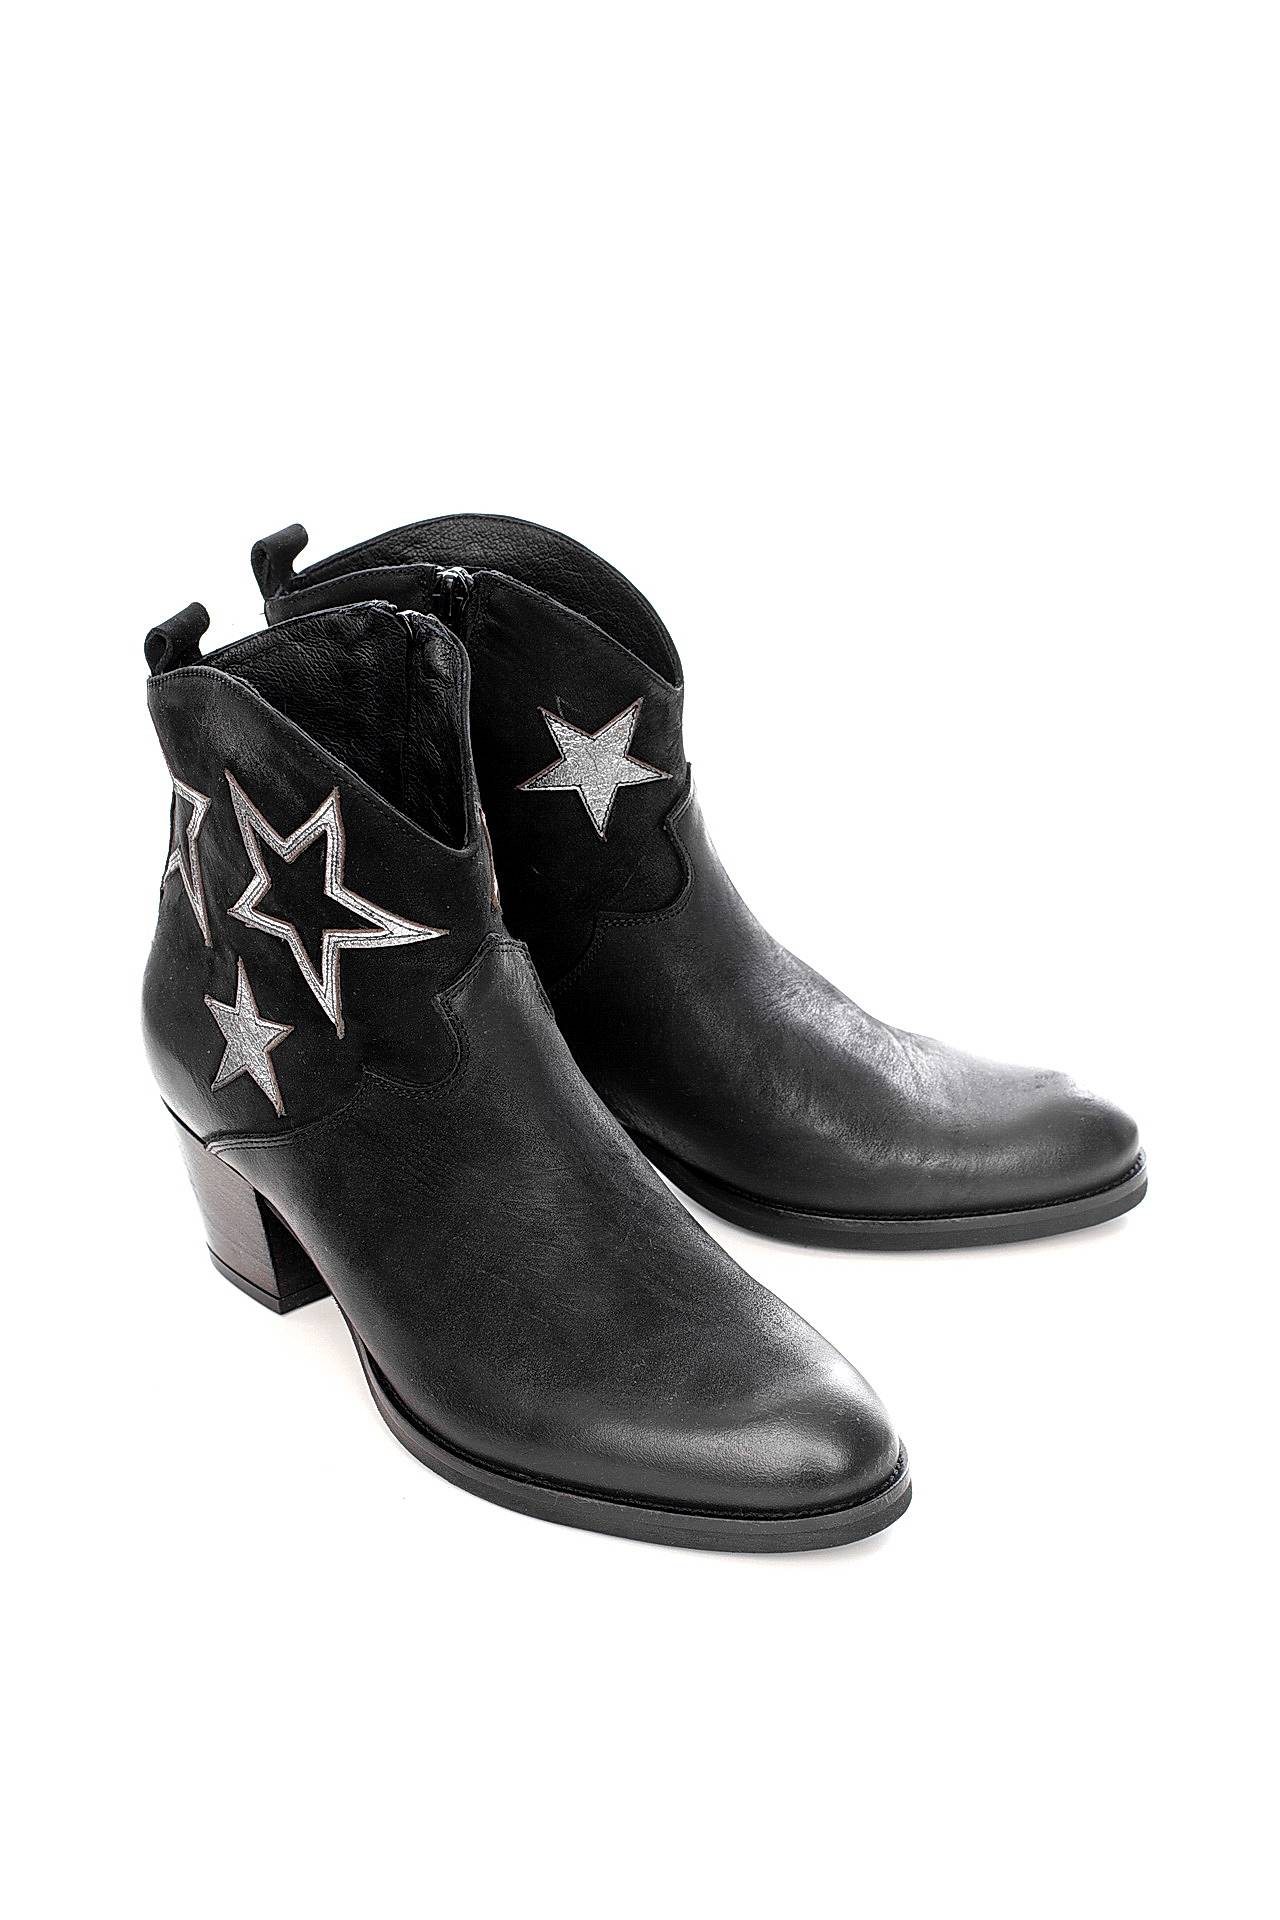 Обувь женская Ботинки LETICIA MILANO by Lestrosa (437/17.1). Купить за 11500 руб.